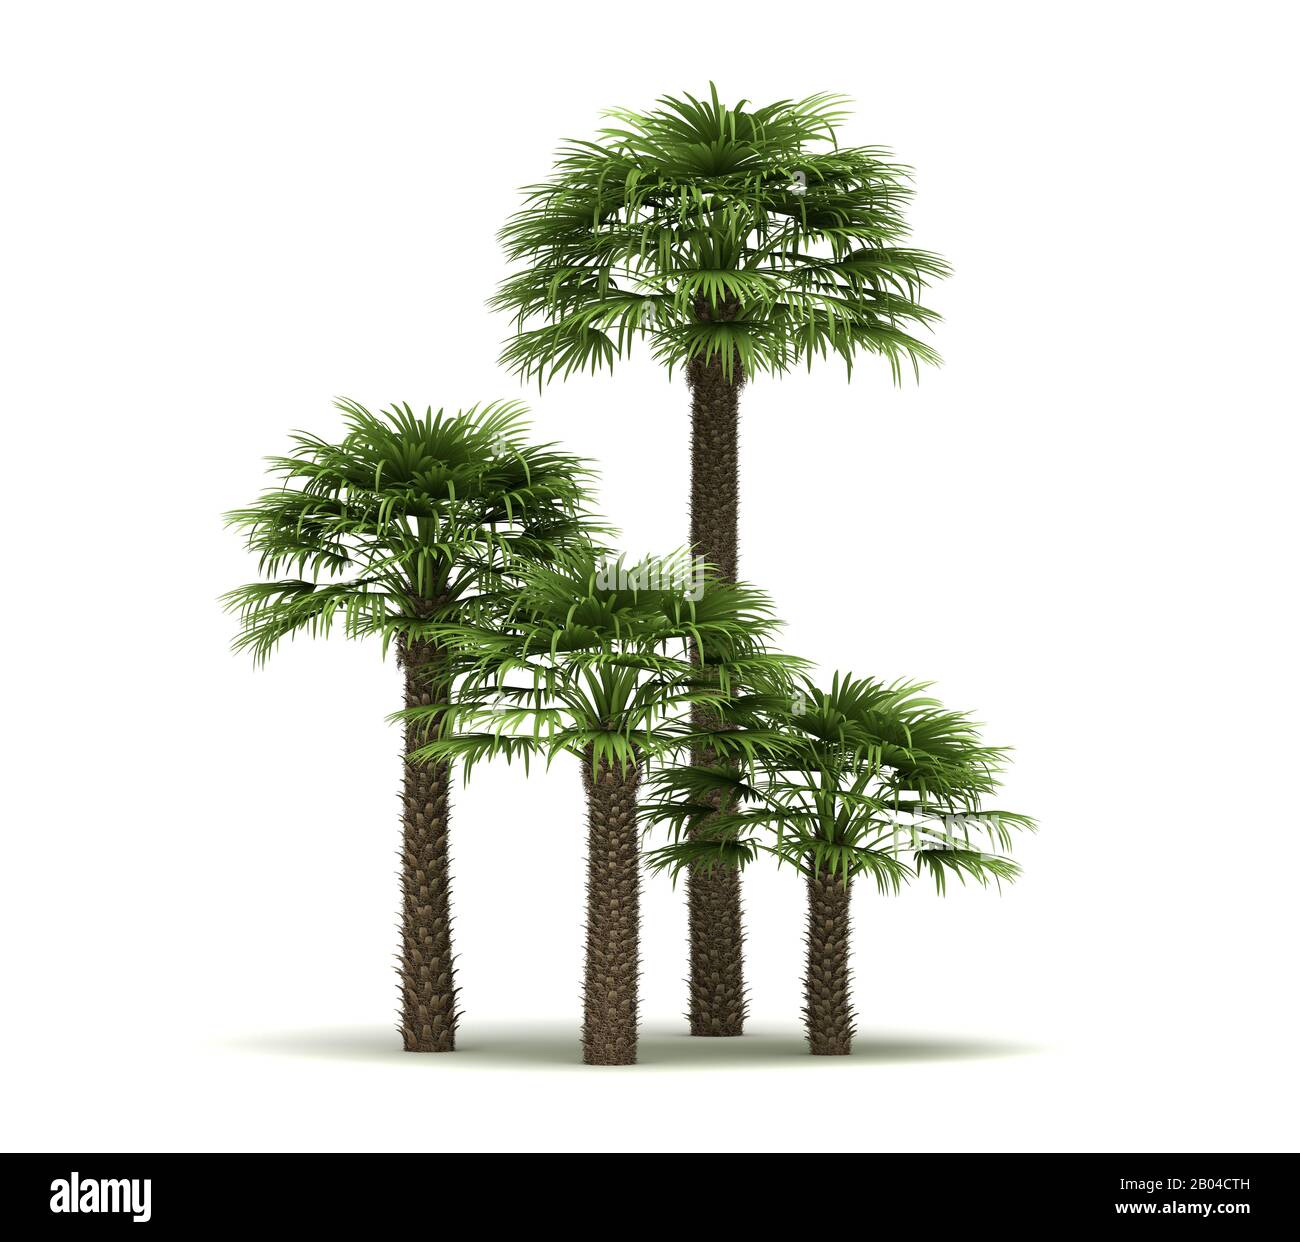 Chamaerops Palm Trees (isolated on white background) Stock Photo